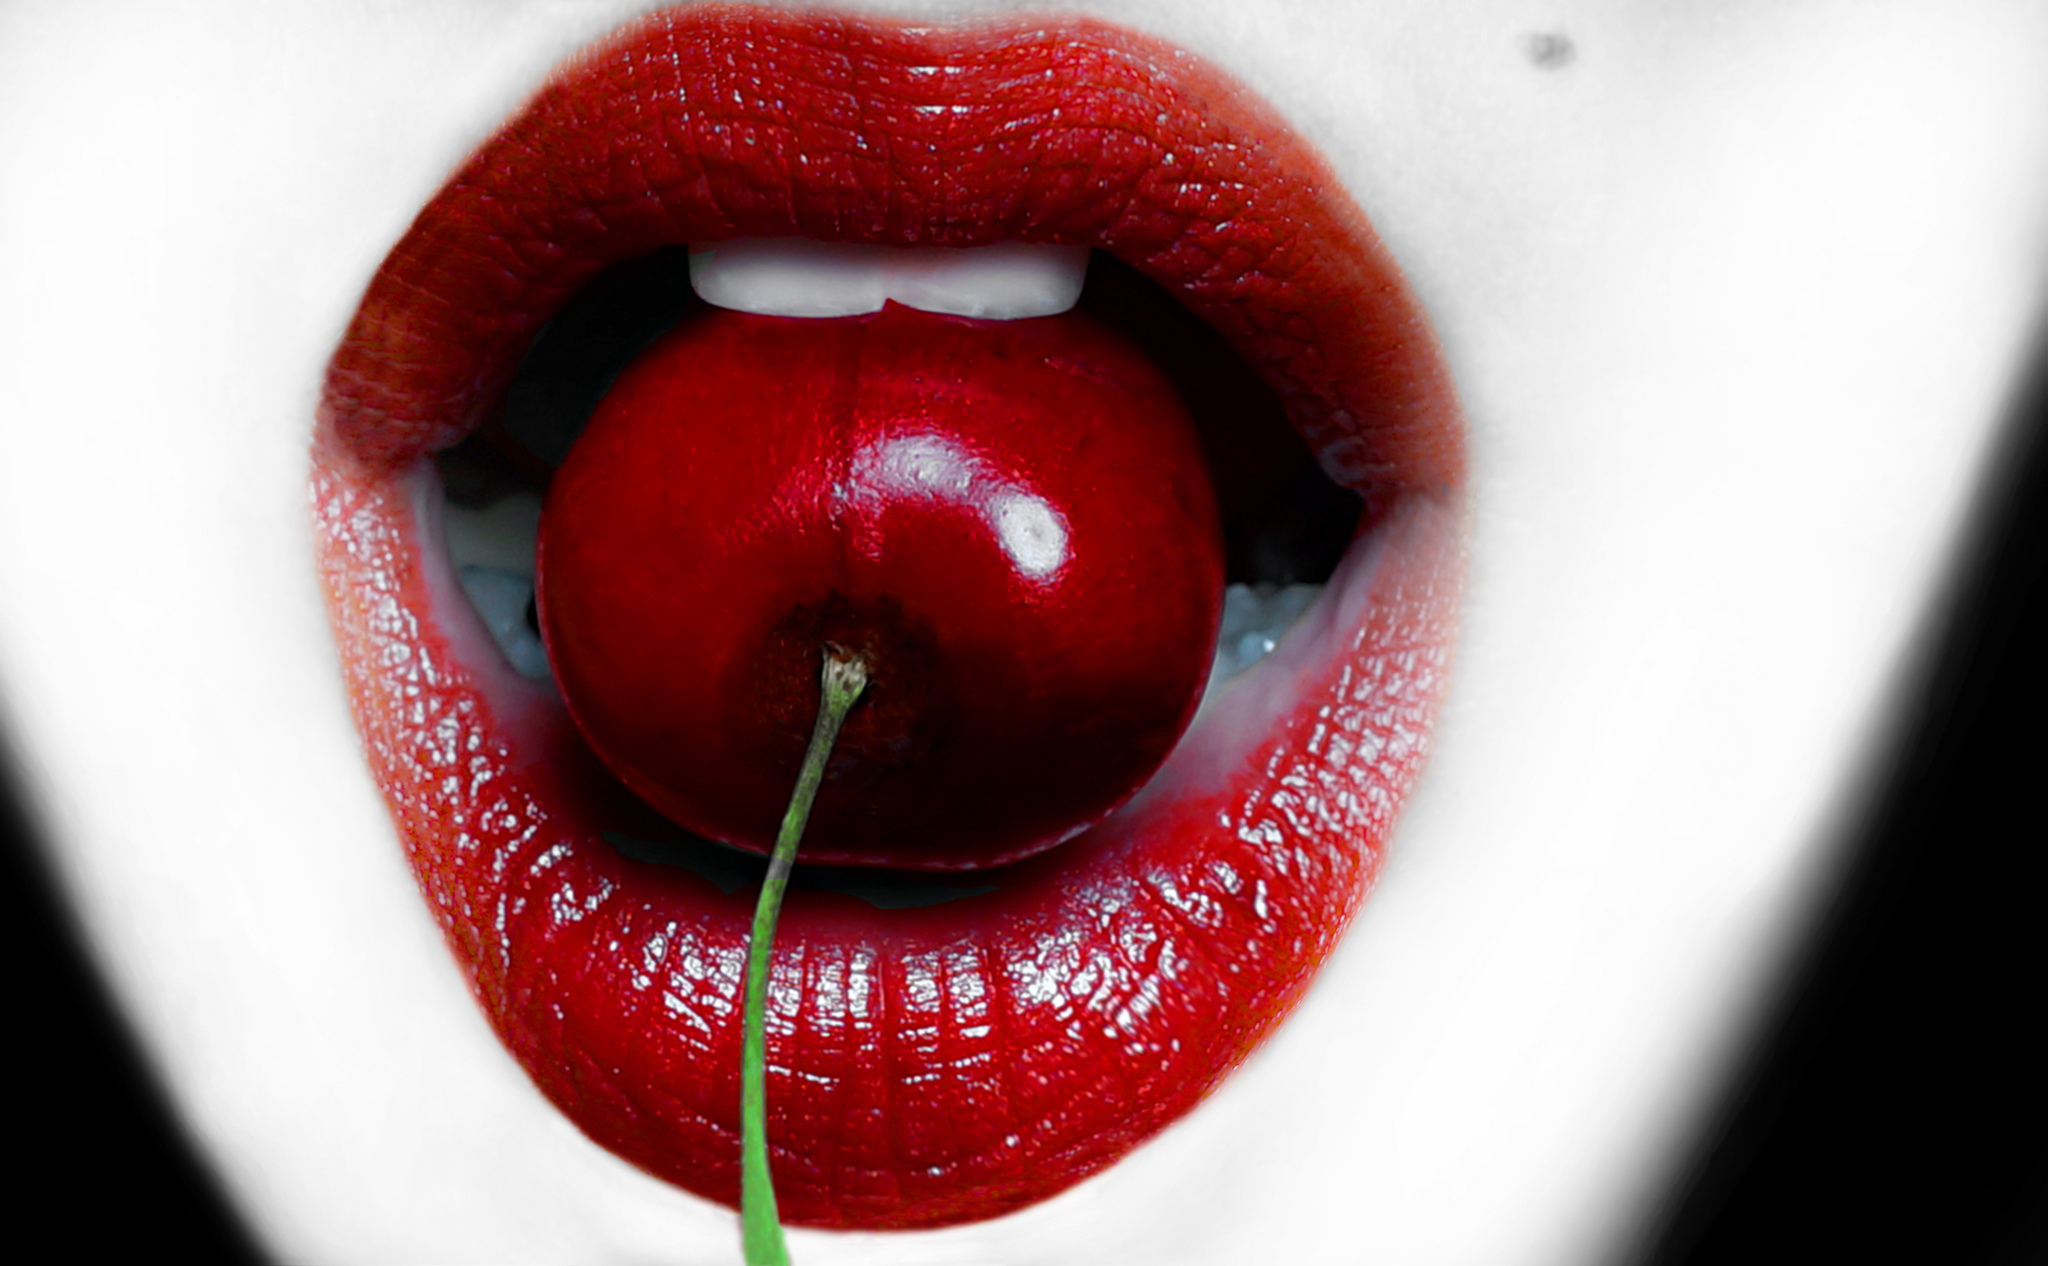 Рота любимый. Женские губы. Сочный красный цвет. Вишенка во рту. Красивые губы.